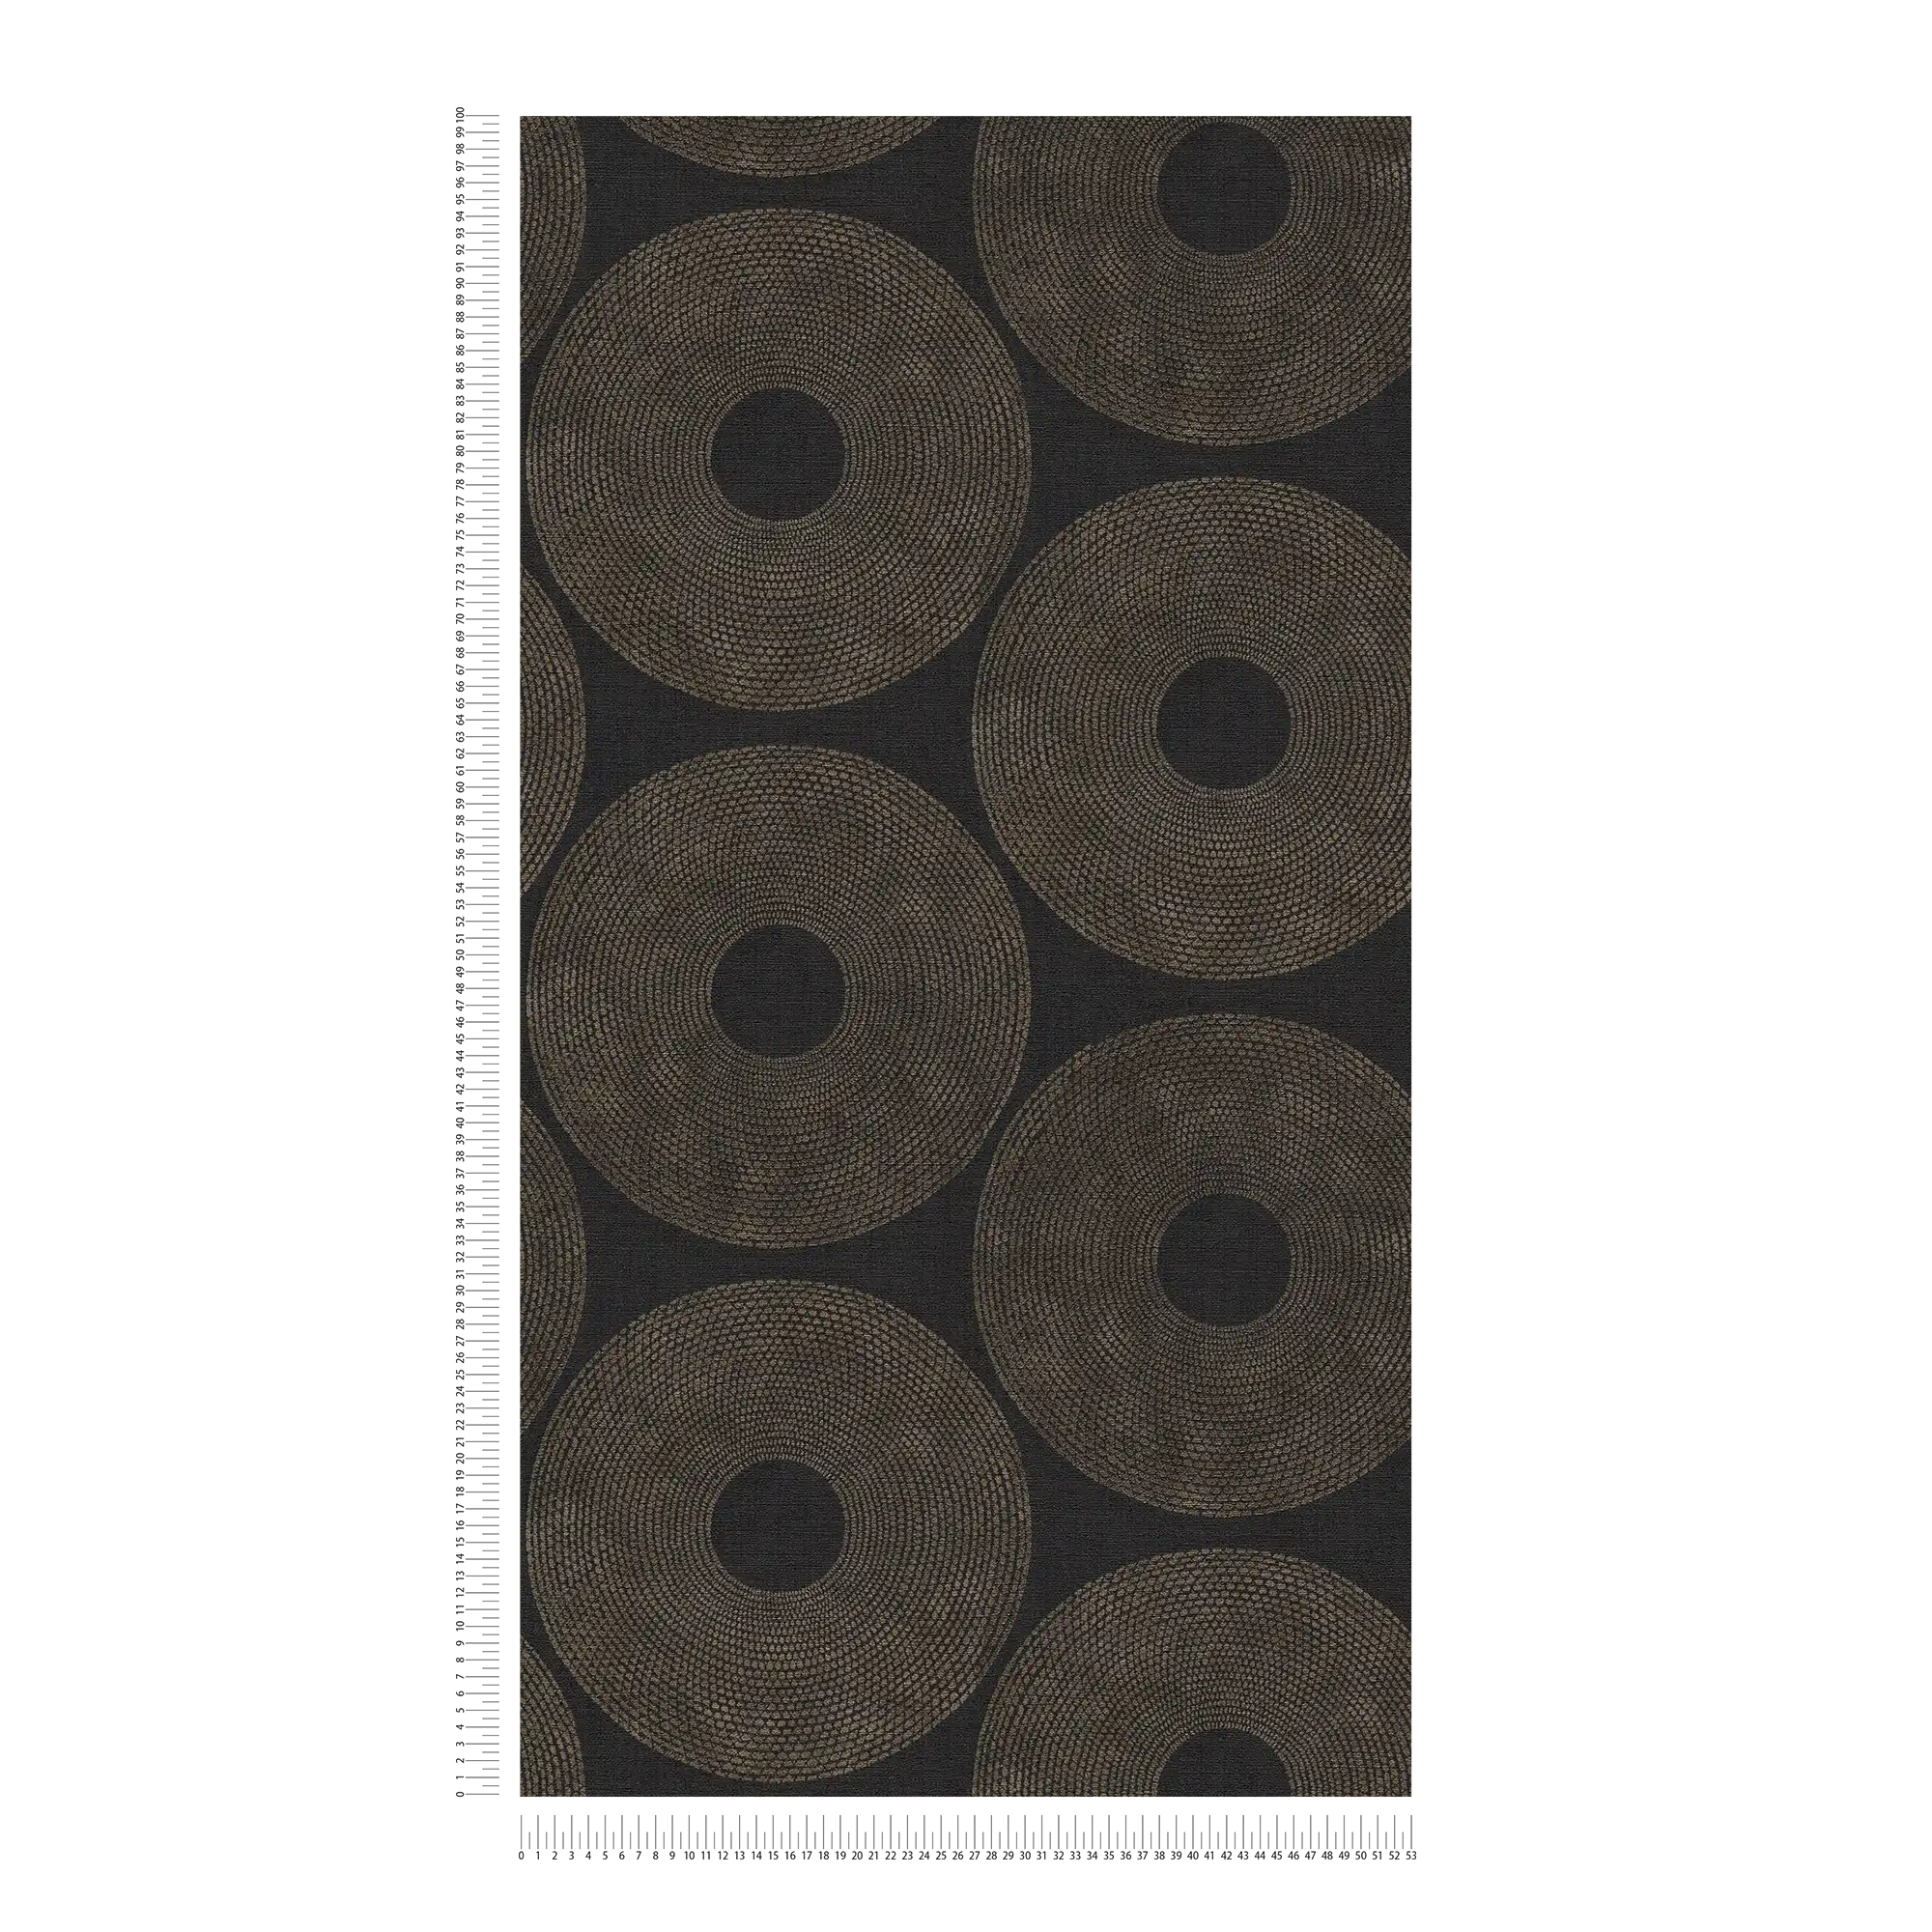             Papier peint ethnique Cercles avec motifs structurés - gris, marron
        